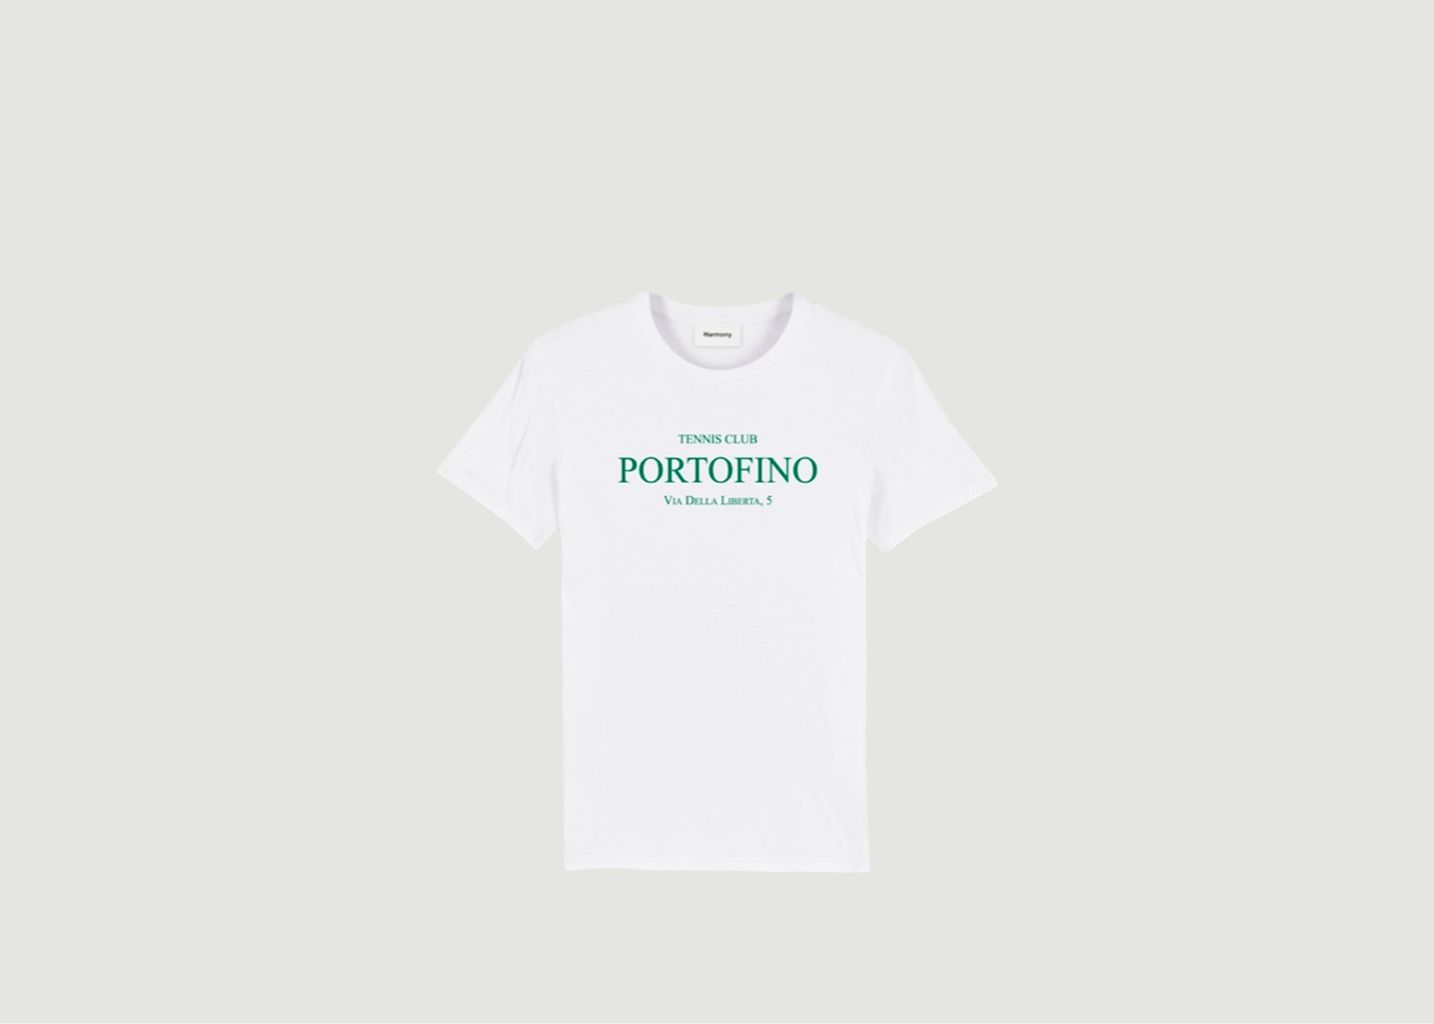 Harmony Portofino Tennis Club Tshirt